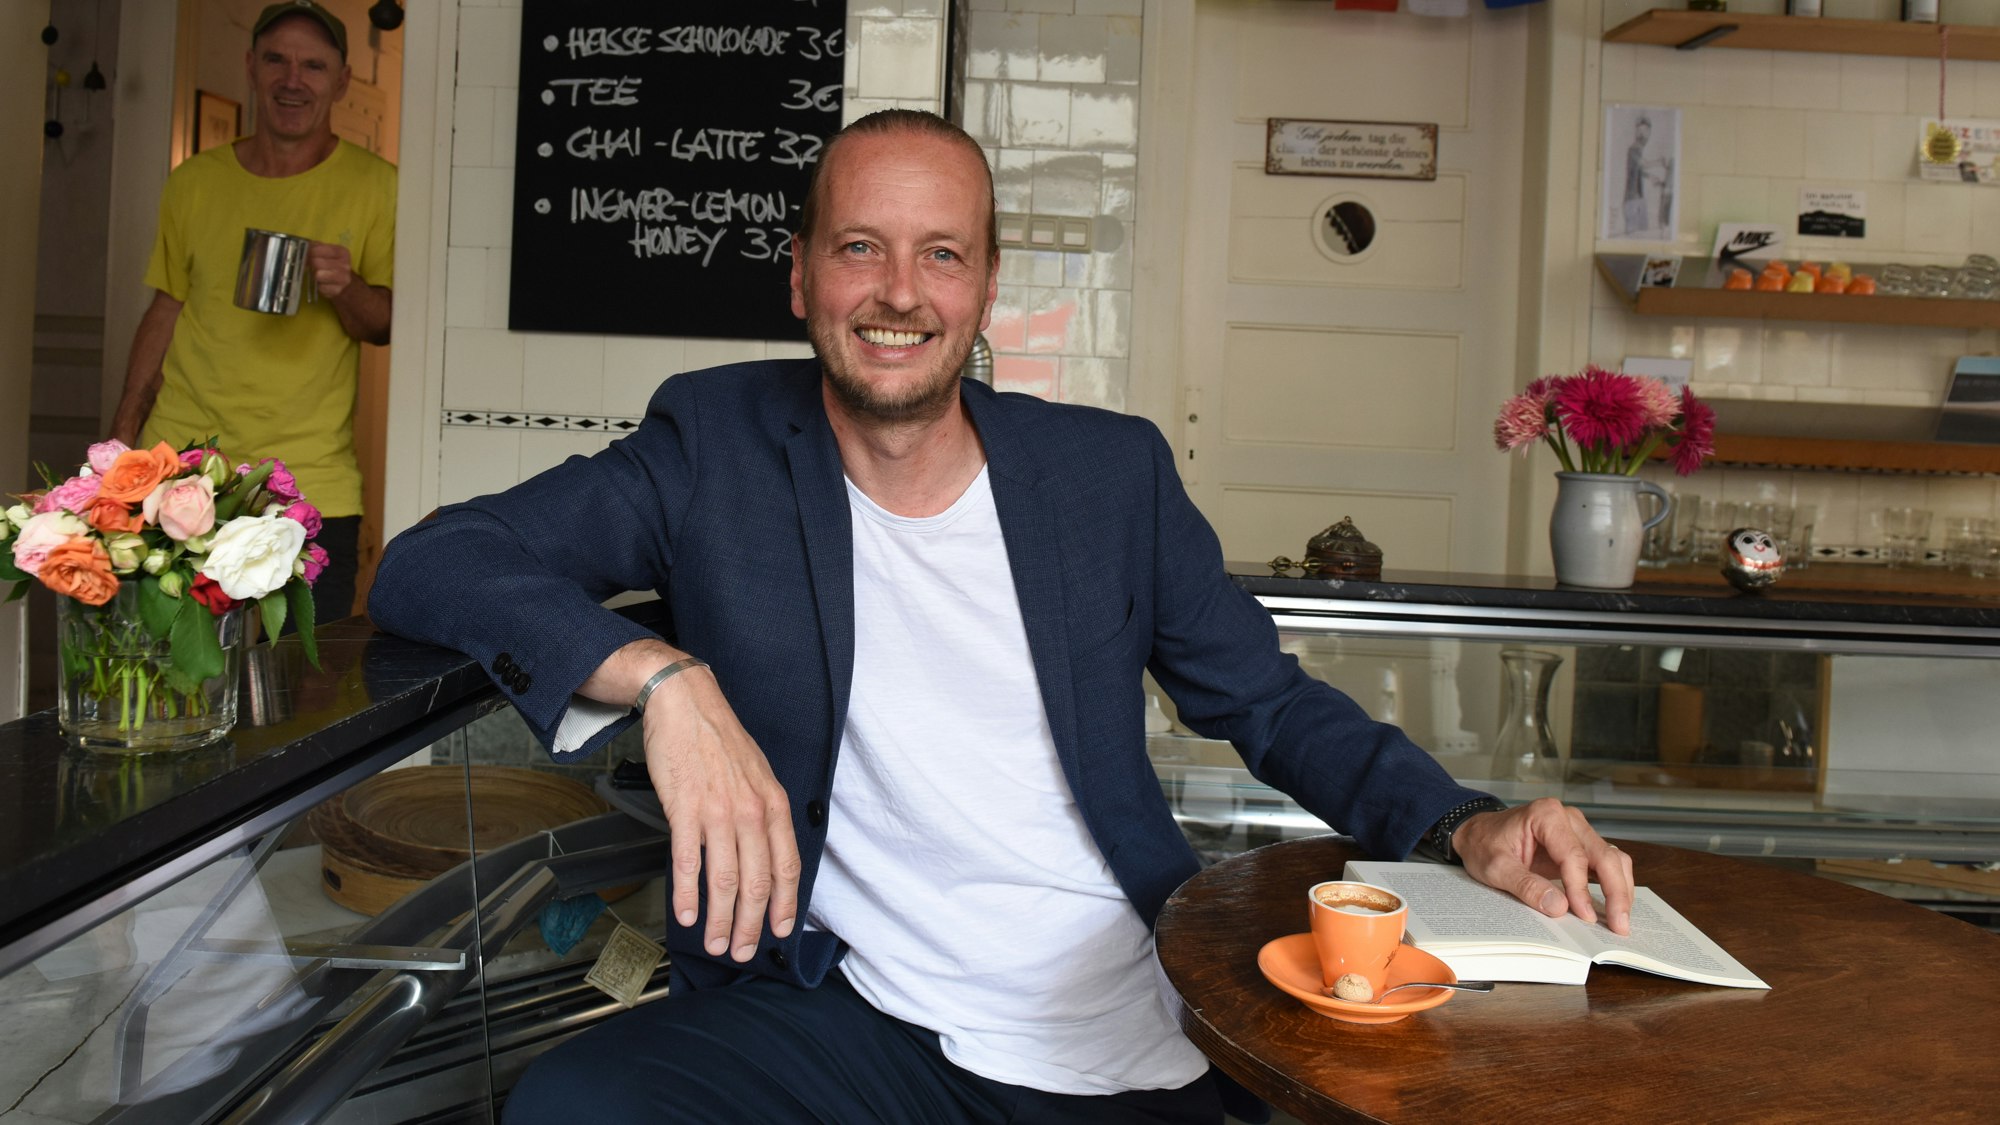 Hannes Benjamin Weikert in a cafe.